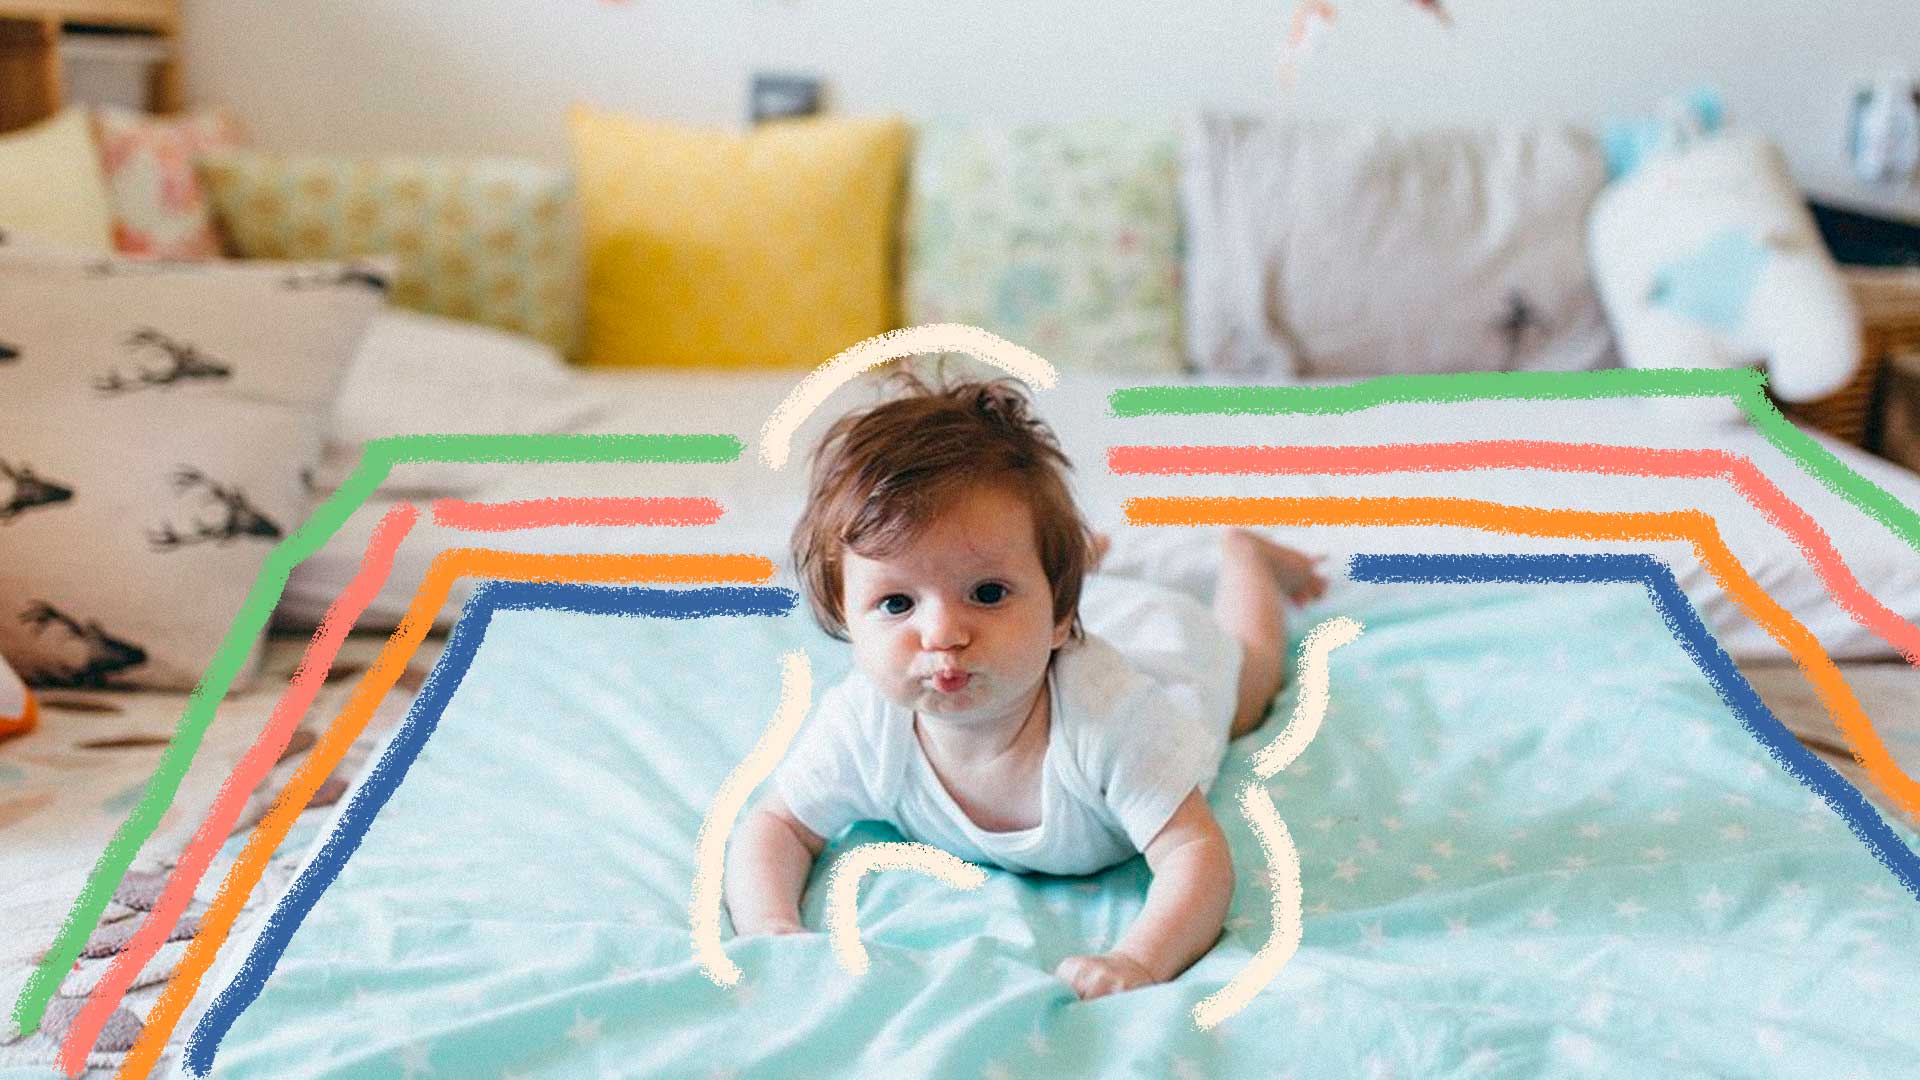 Quarto montessoriano: foto de um bebê que está de bruços e olha para frente. Ele está em cima de um colchão e ao fundo há almofadas.